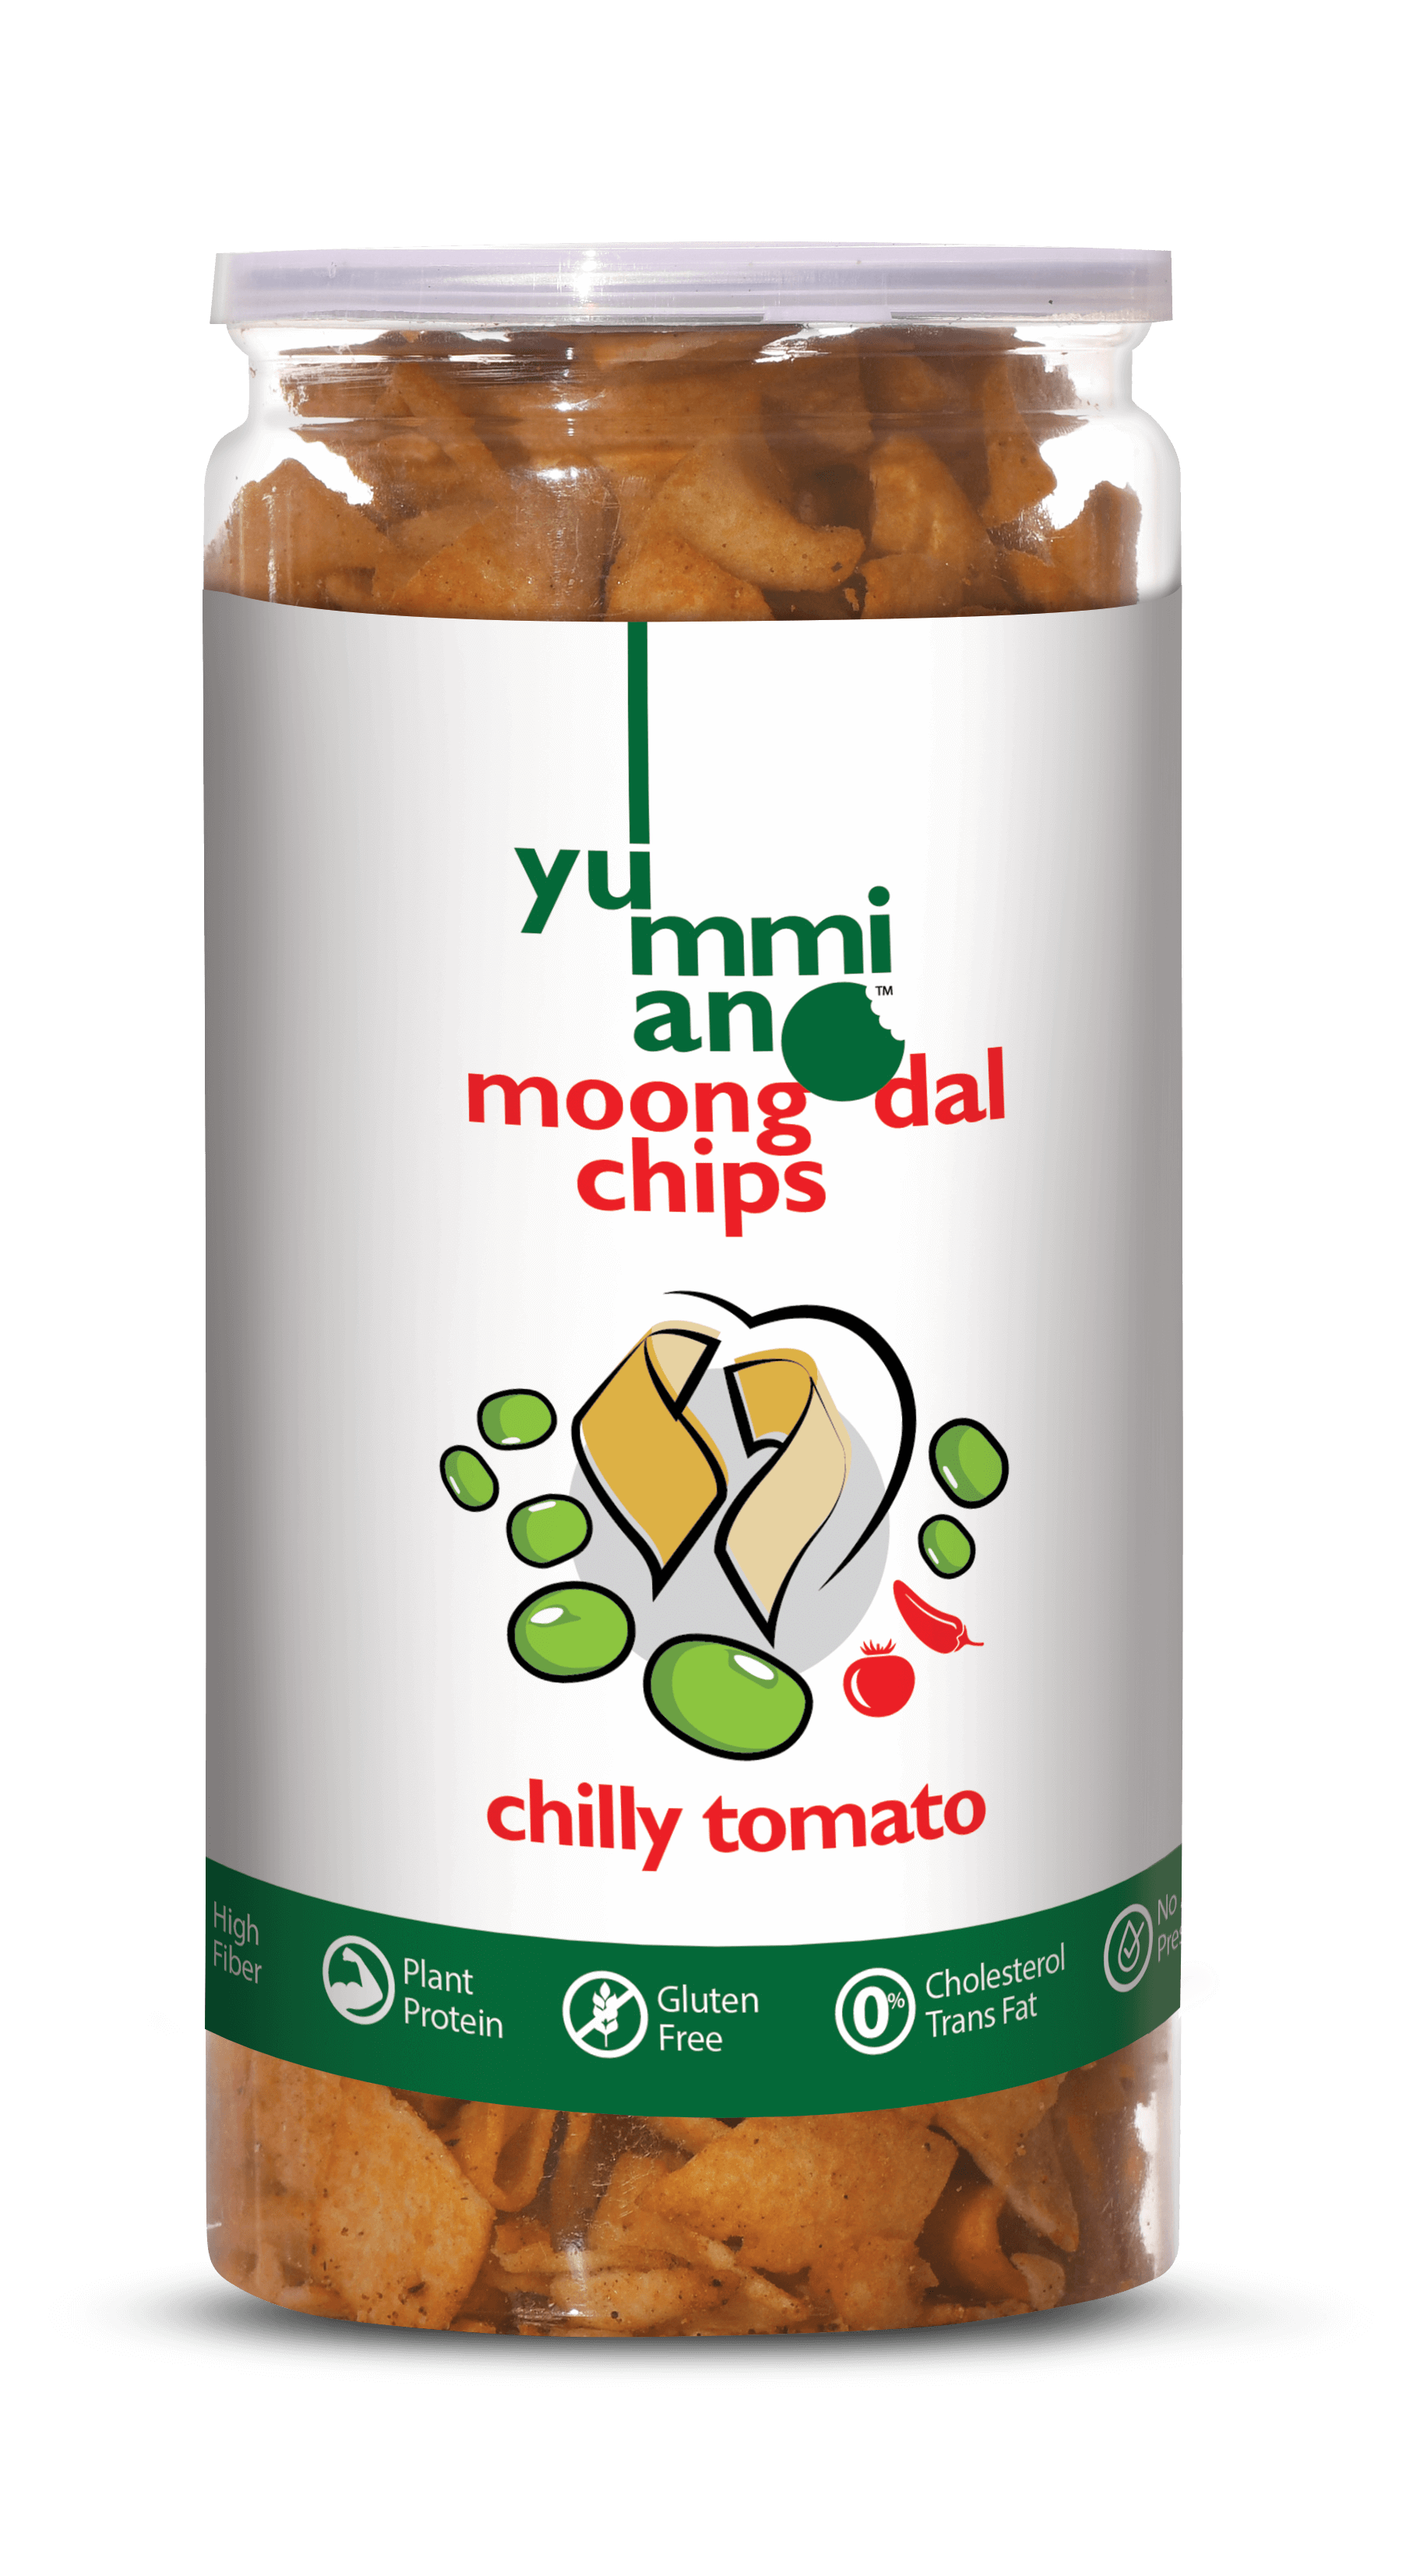 Yummiano Moong Dal Chips â€šÃ„Ã¶âˆšÃ‘âˆšÂ¨ Chilly Tomato Image